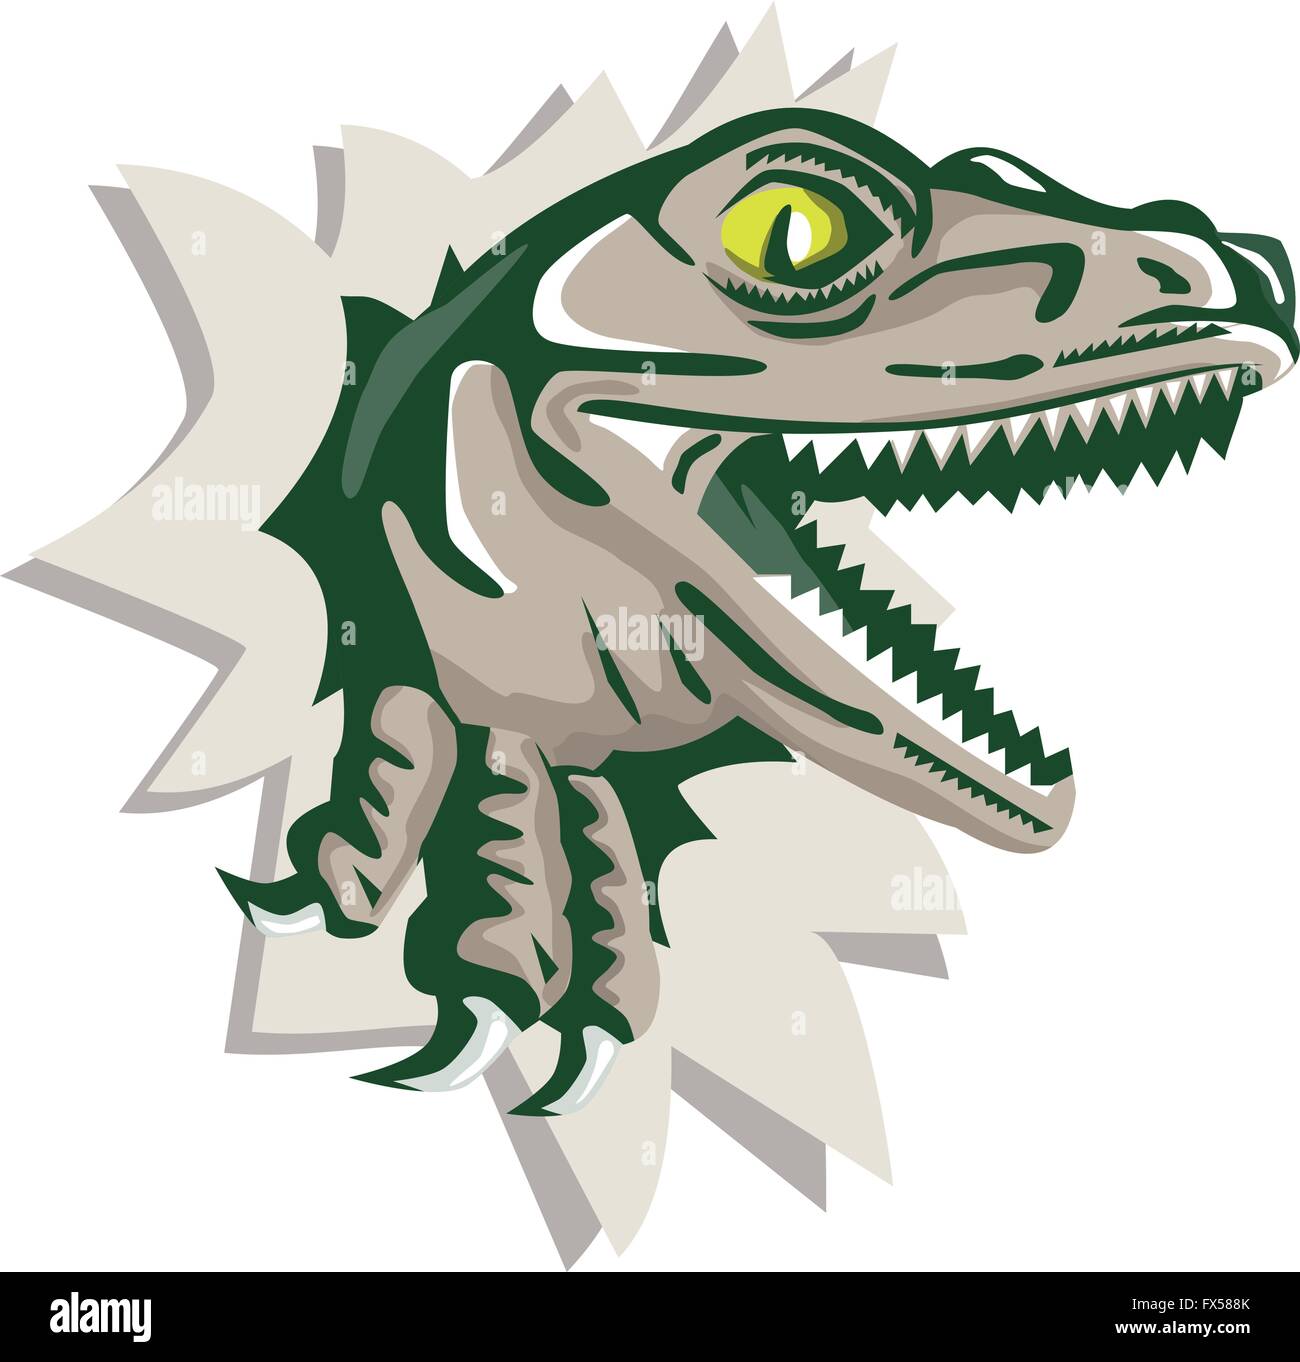 Abbildung eines Raptor t-Rex Dinosaurier Echse Reptil Kopf brechen aus Wand der Seitenansicht auf isolierte Hintergrund getan im retro-Stil. Stock Vektor